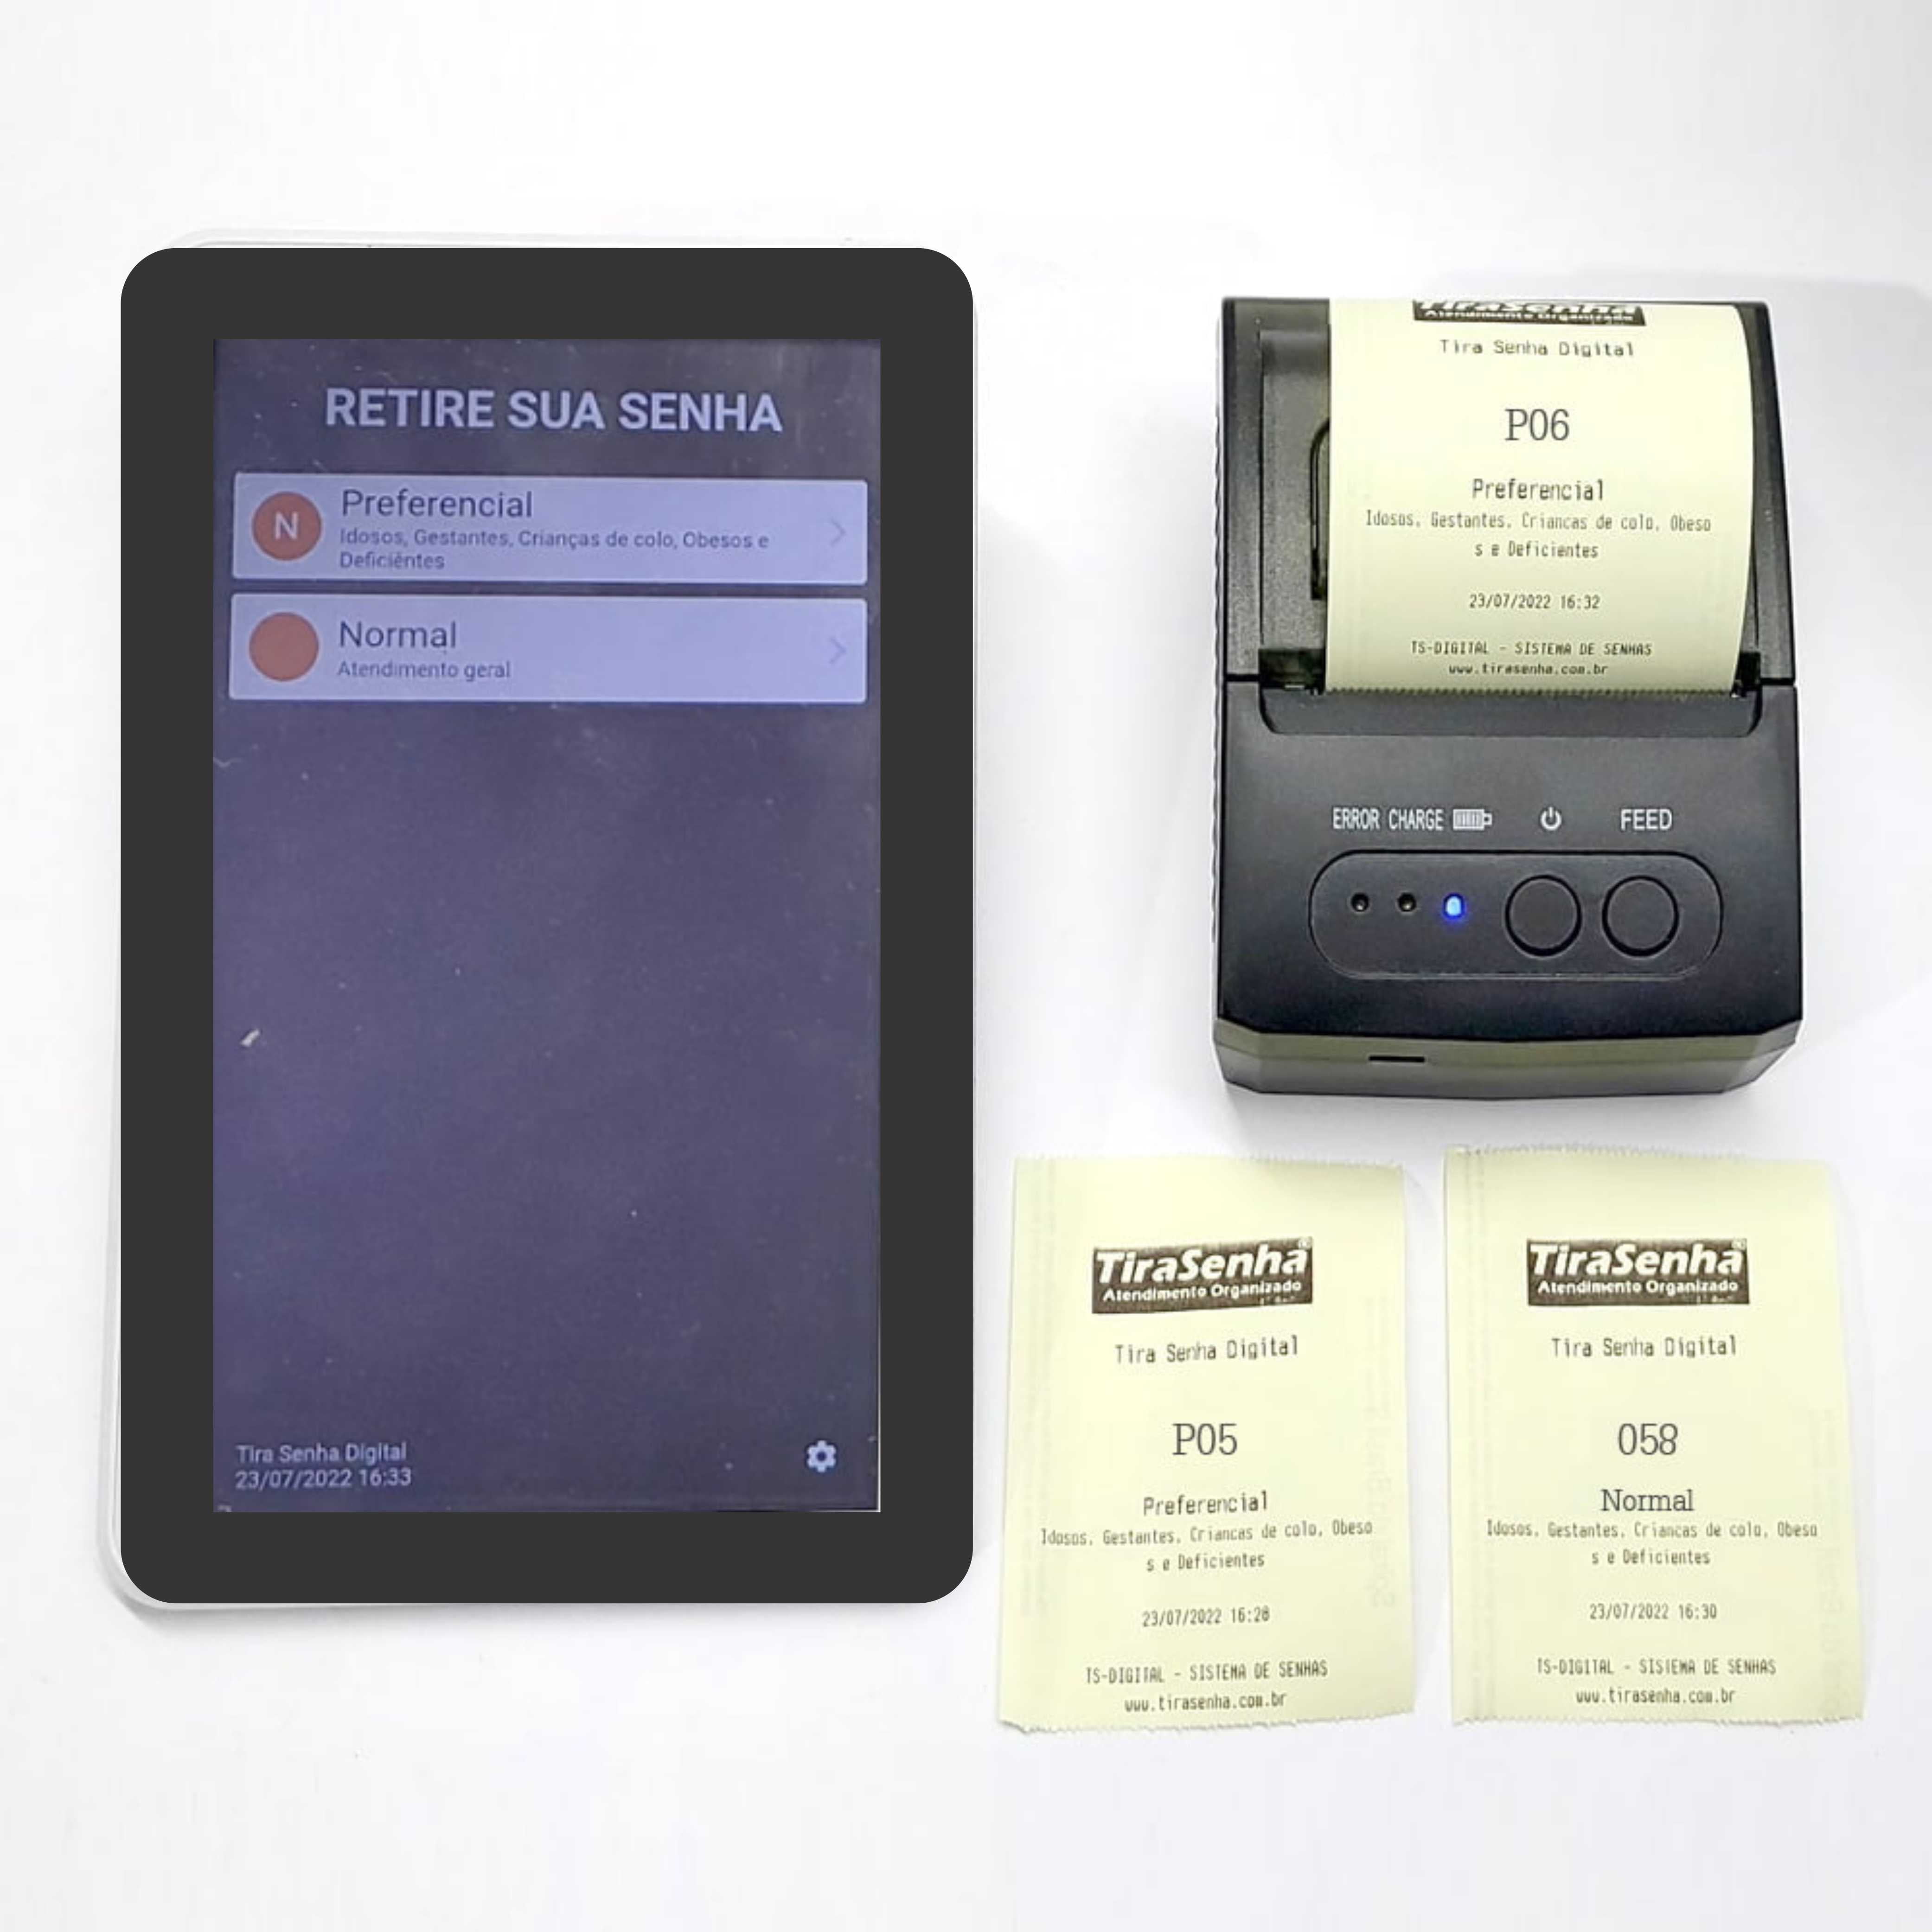 Tablet Emissor de Senhas c/ Impressora Térmica de Senhas para até 10 tipos de Atendimento + App TiraSenha Digital 2.0 Licença de uso vitalícia